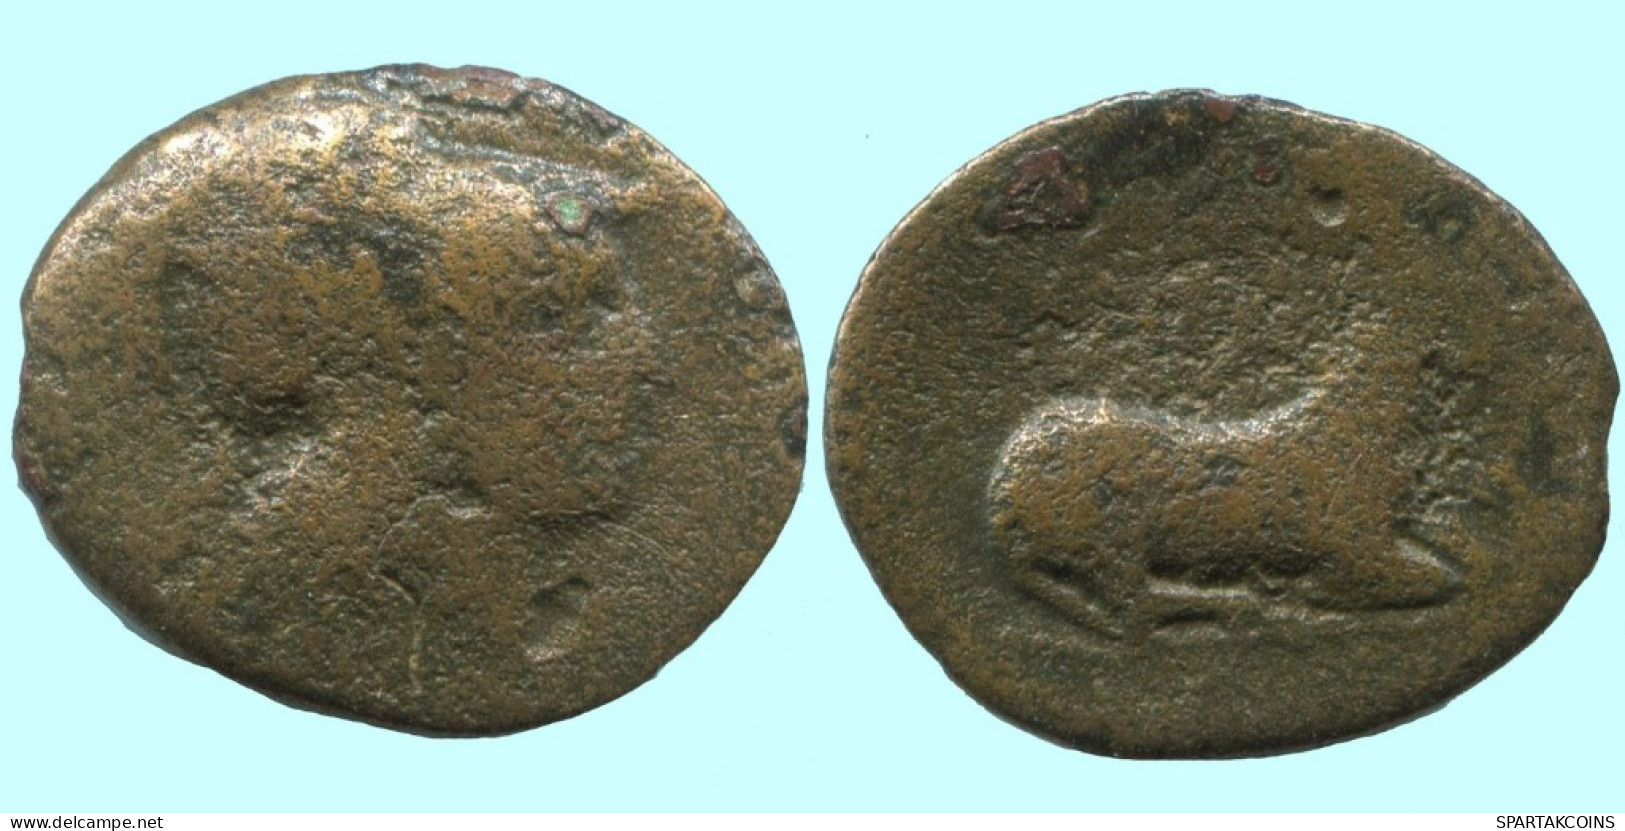 DEER AUTHENTIC ORIGINAL ANCIENT GREEK Coin 6.5g/20mm #AF907.12.U.A - Greek